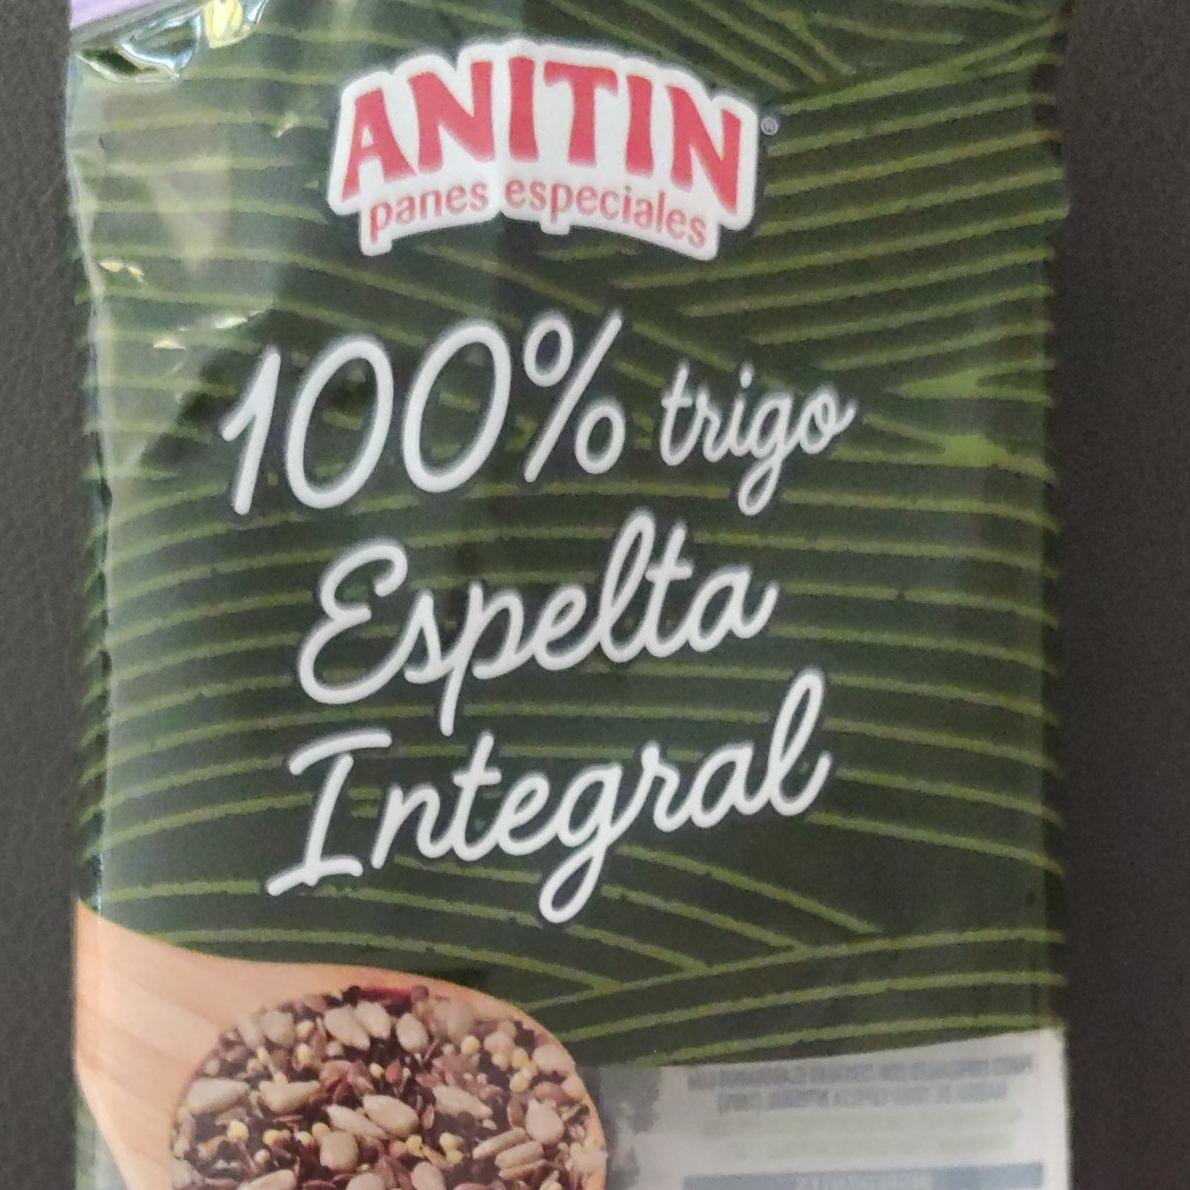 Fotografie - 100% trigo Eapelta Integral Anitin panes especiales